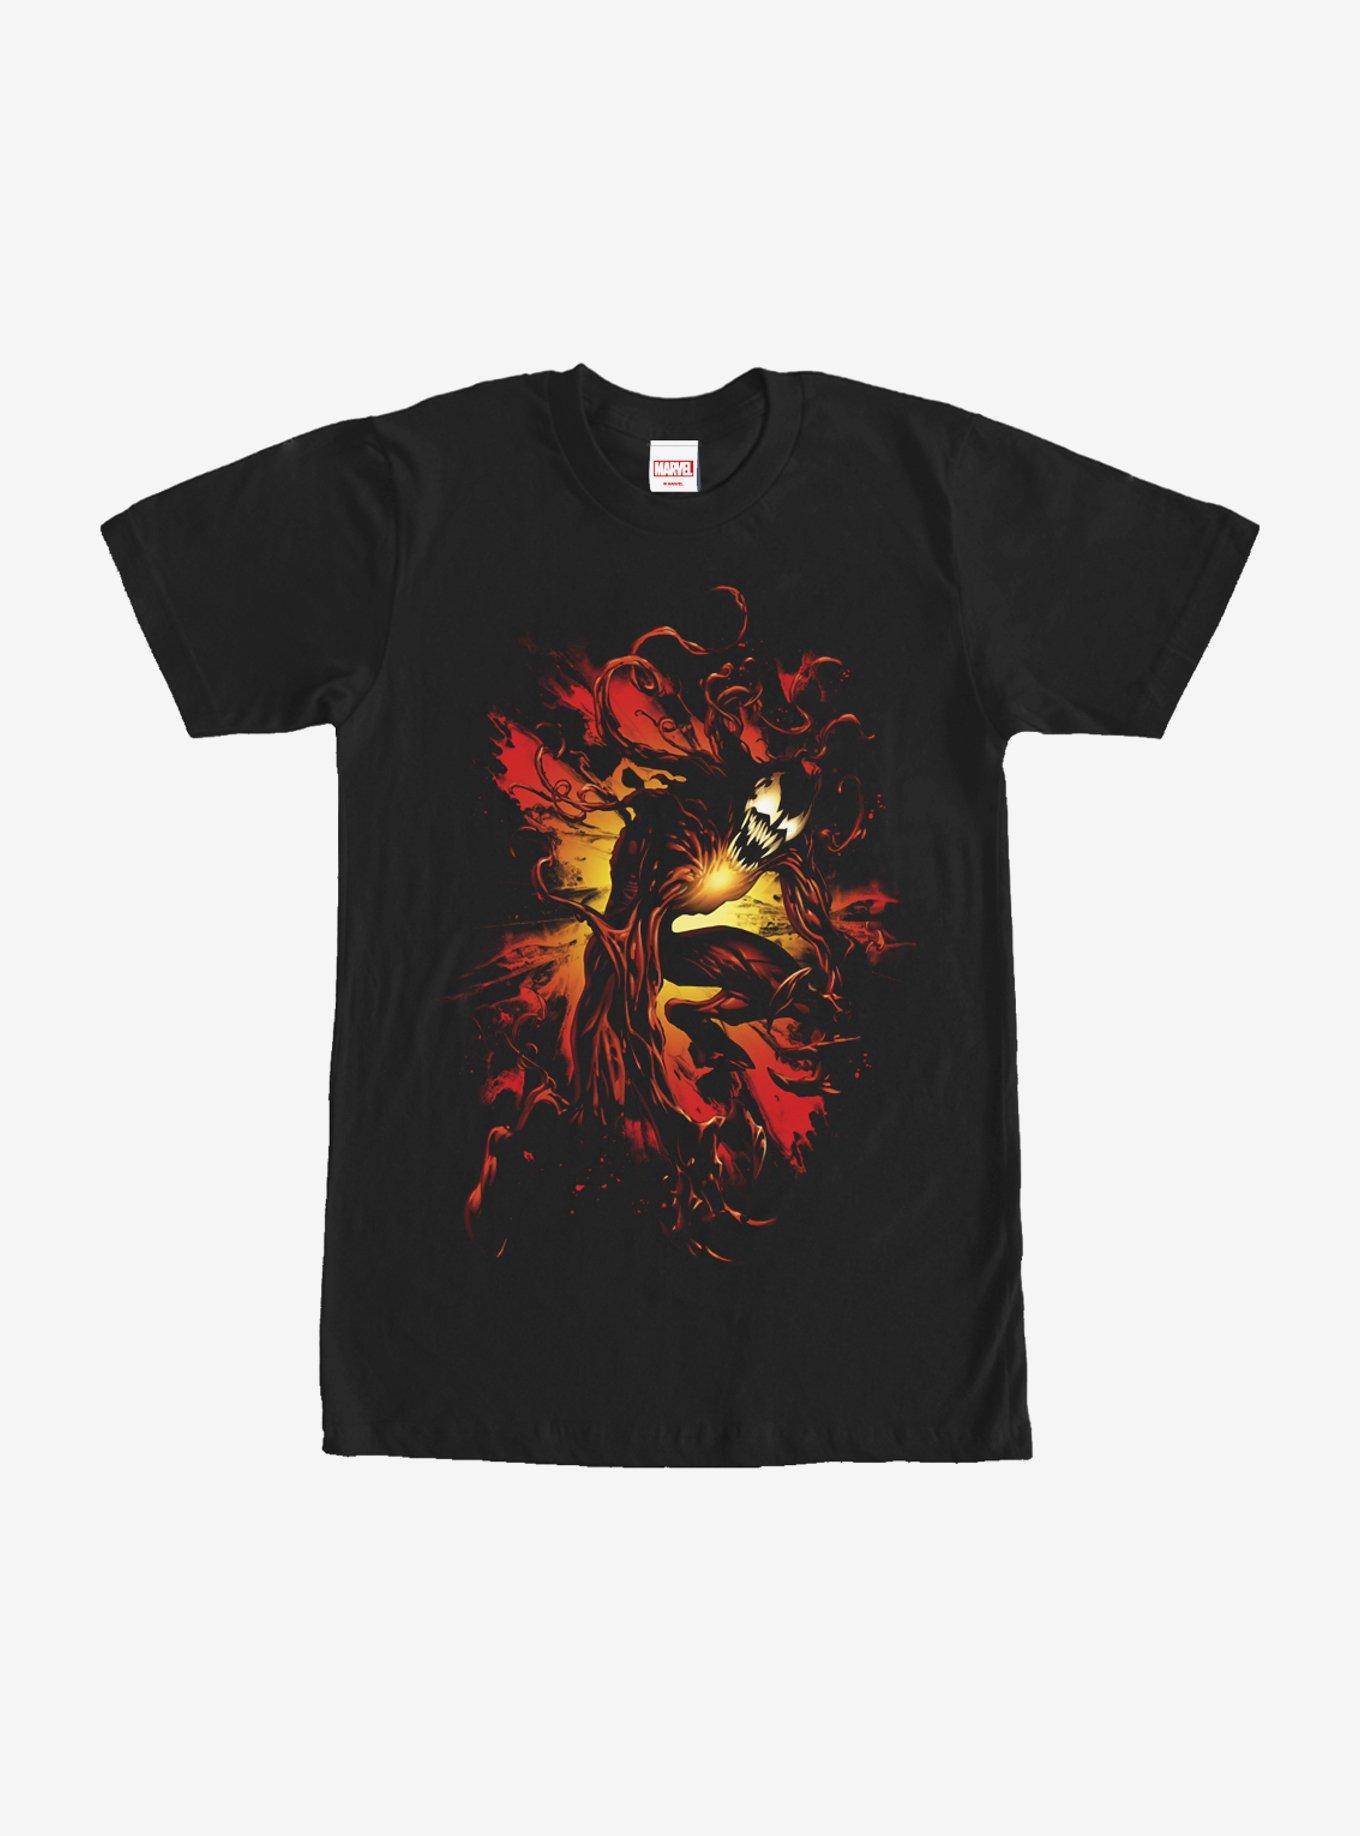 Marvel Carnage Cletus Kasady T-Shirt, BLACK, hi-res